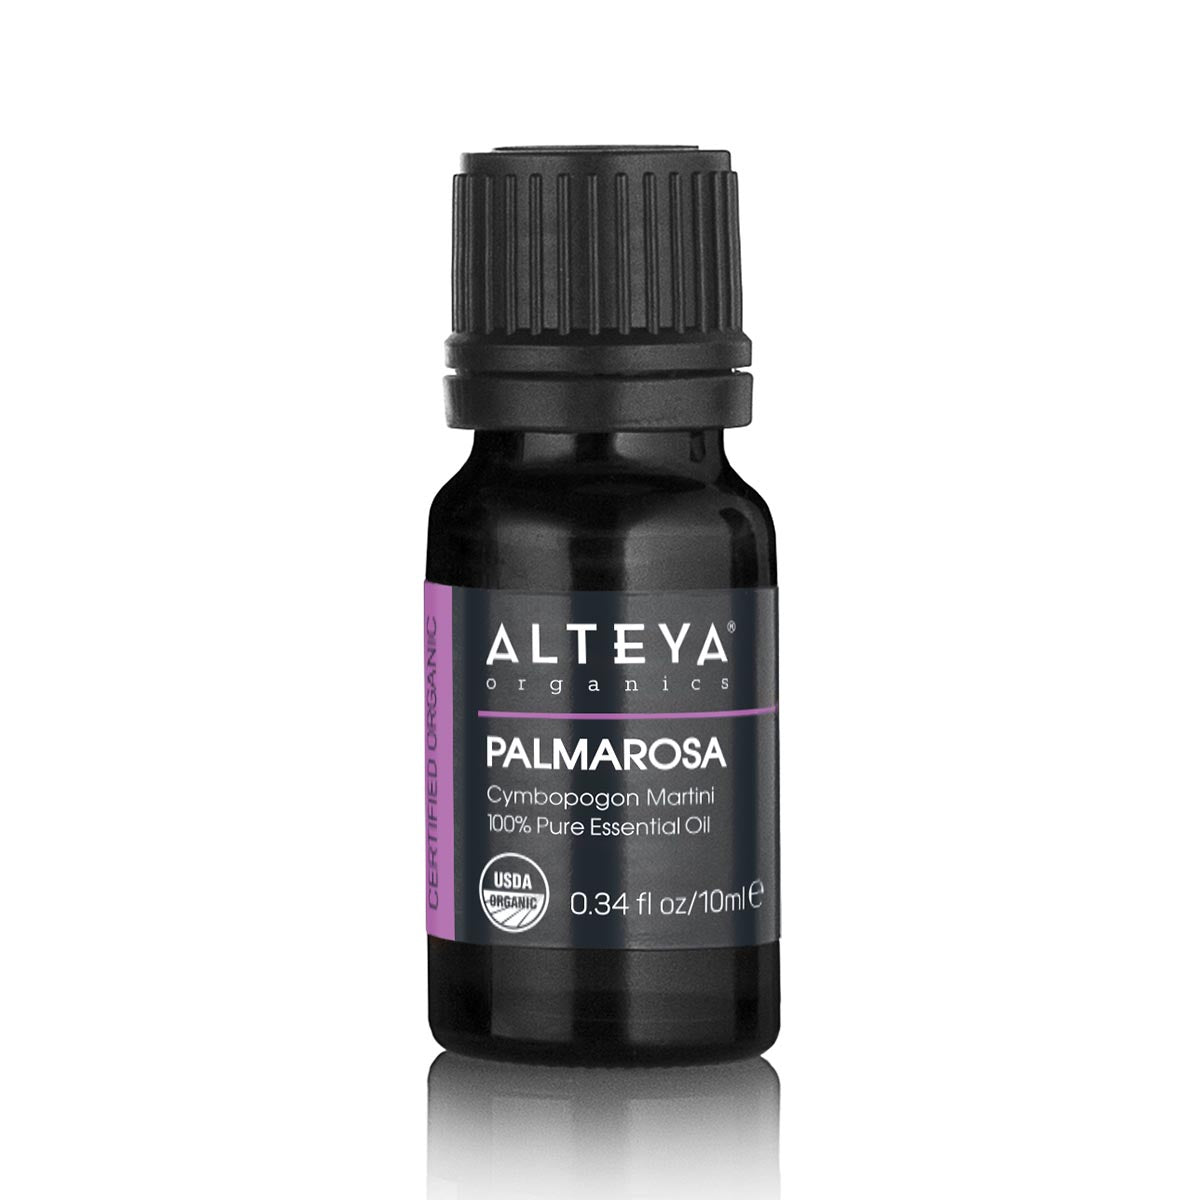 Етеричното масло от палмароза се използва за ароматизиране на различни козметични продукти и продукти за лична хигиена. Използва се и в множество парфюмни композиции като средна нотка.